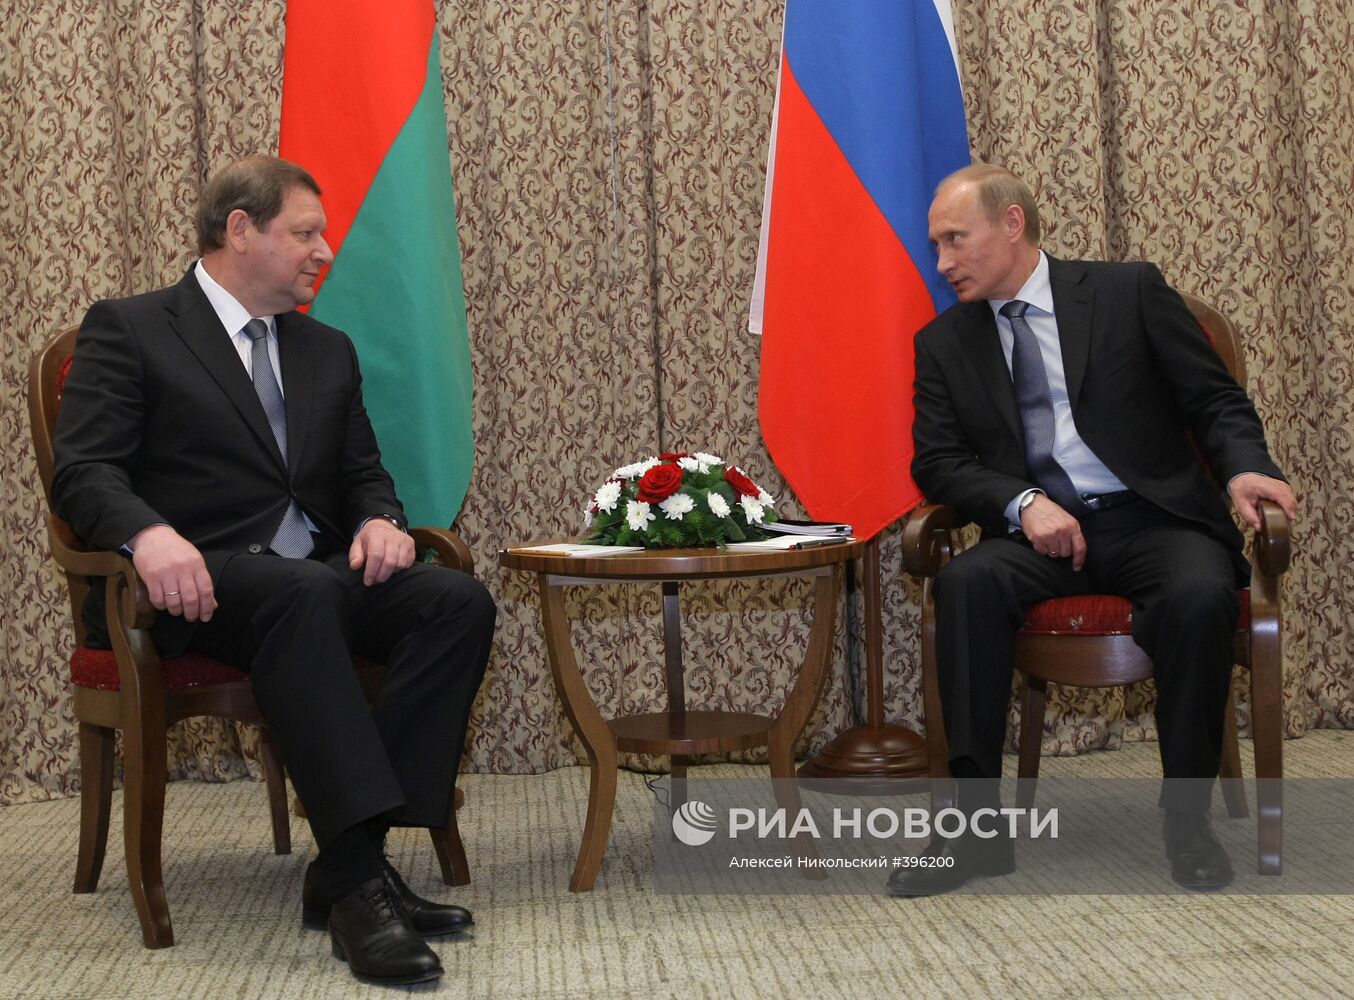 Встреча В. Путина с С. Сидорским